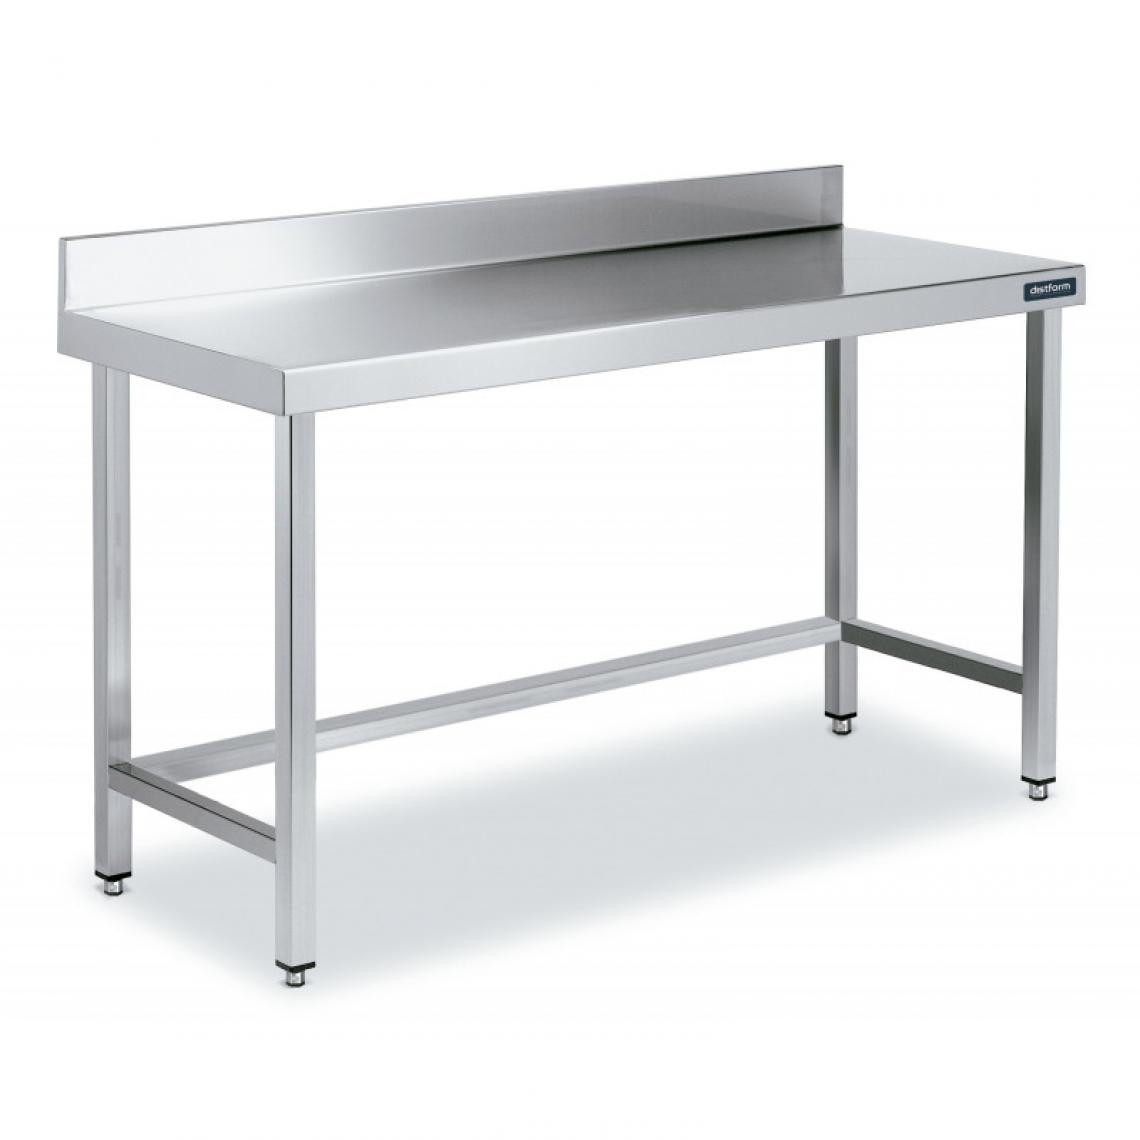 DISTFORM - Table Inox de Travail avec Dosseret Gamme 900 - Distform - Acier inoxydable1800x900 - Tables à manger